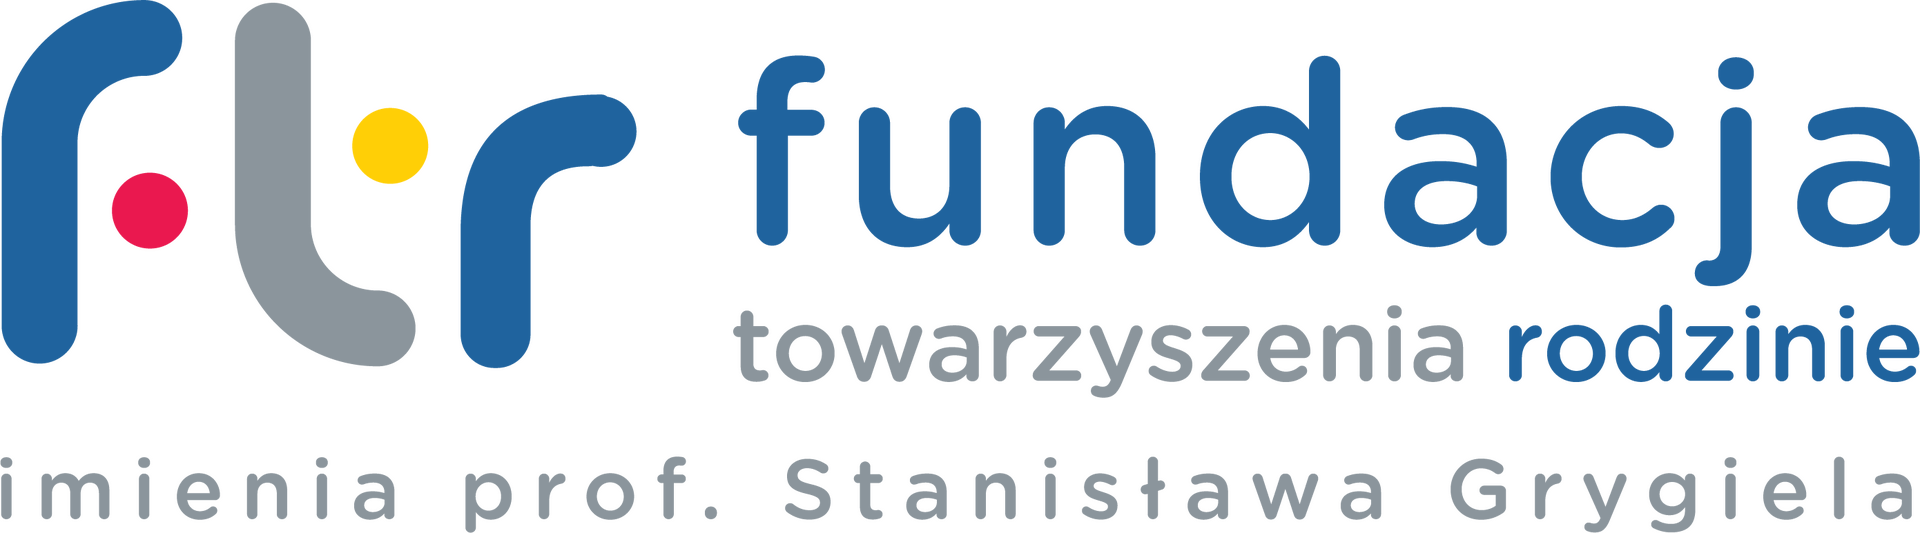 fundacja_towarzyszenia_rodzinie_logo.png